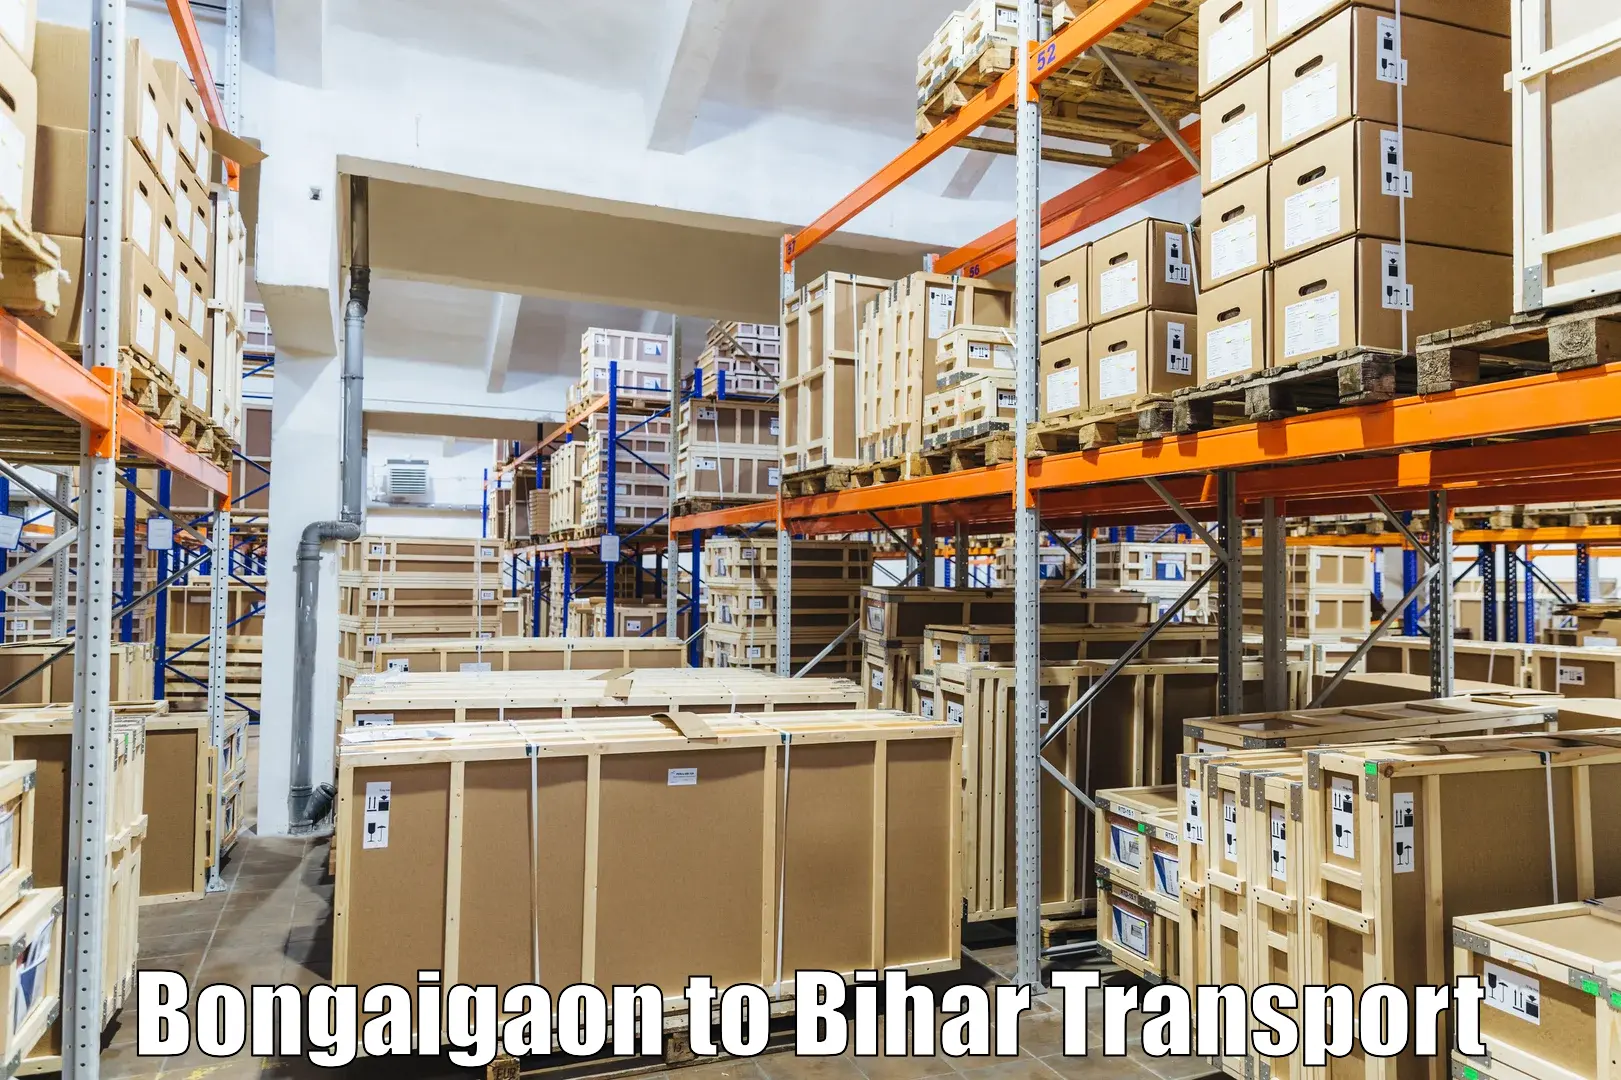 Intercity transport Bongaigaon to Baniapur